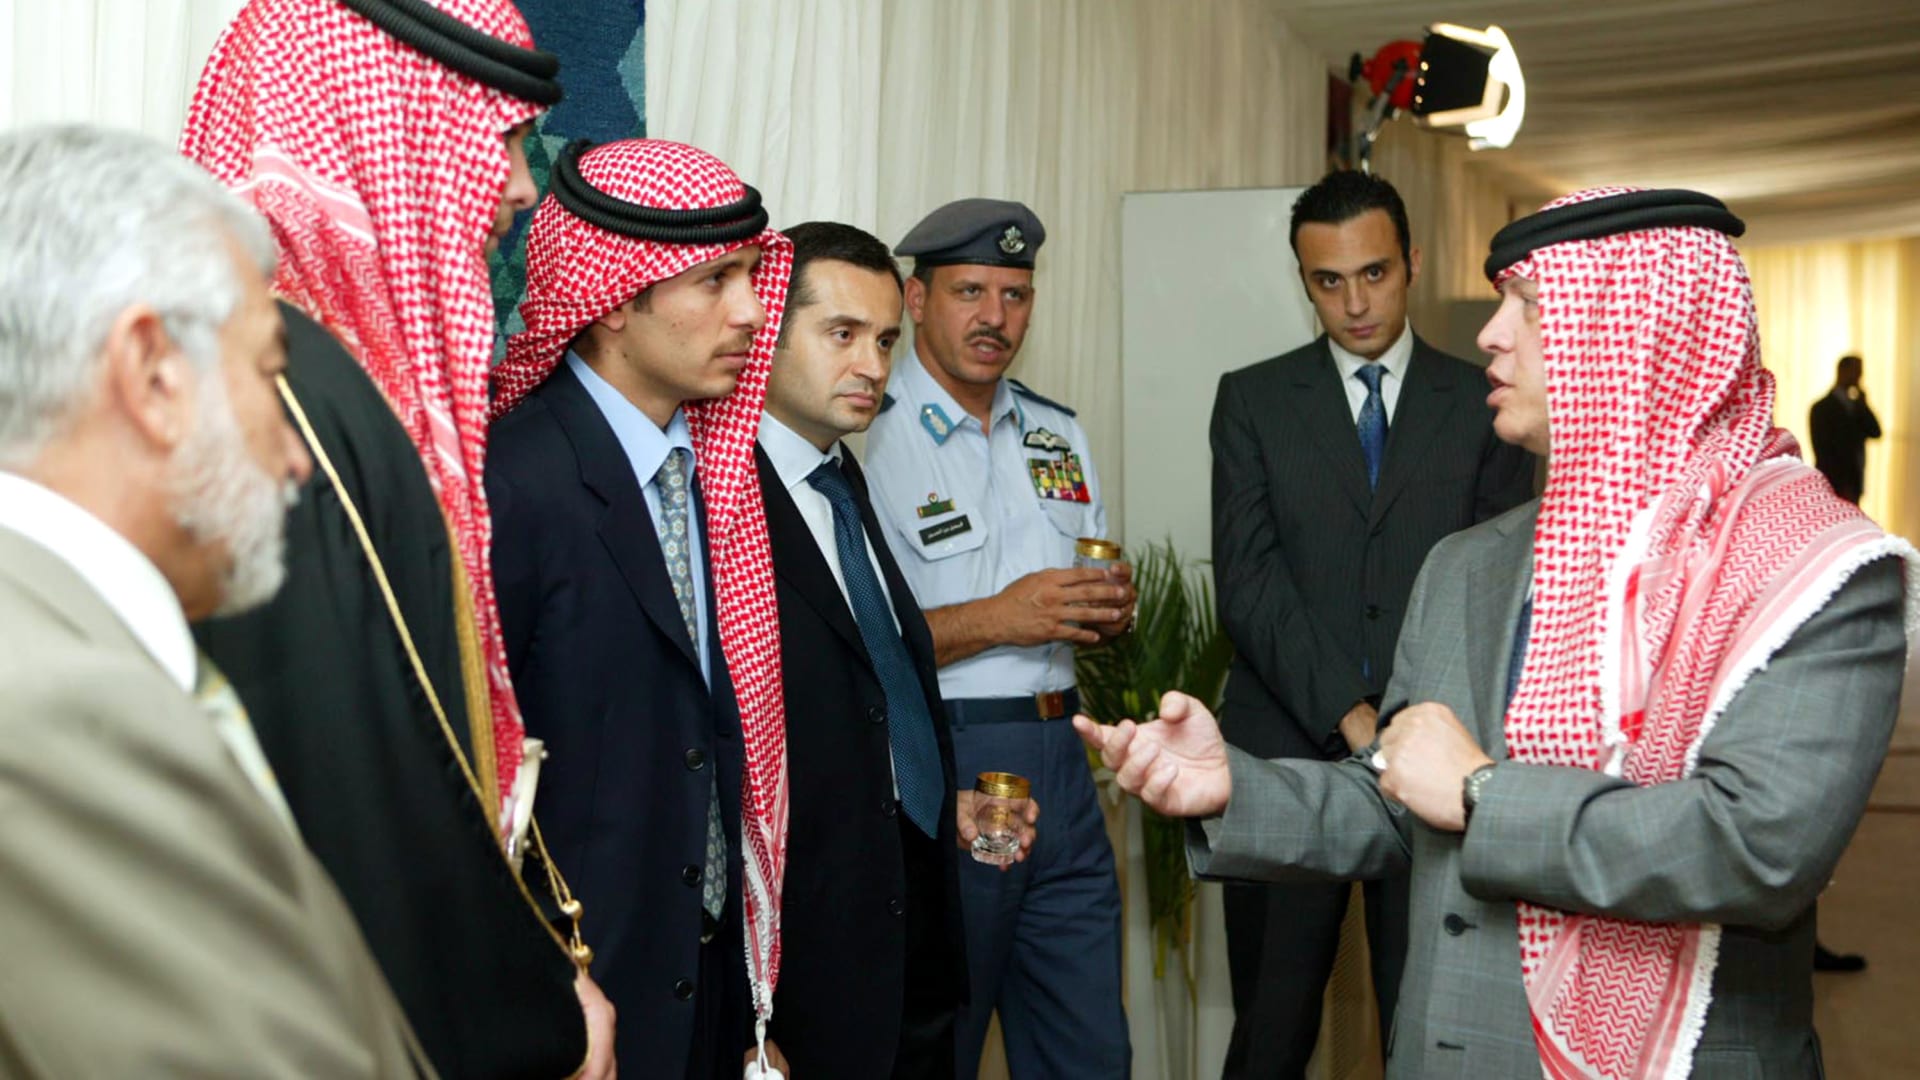 صورة ارشيفية للعاهل الأردني الملك عبدالله بحديث مع الأمير حمزة (الثالث يسارا)